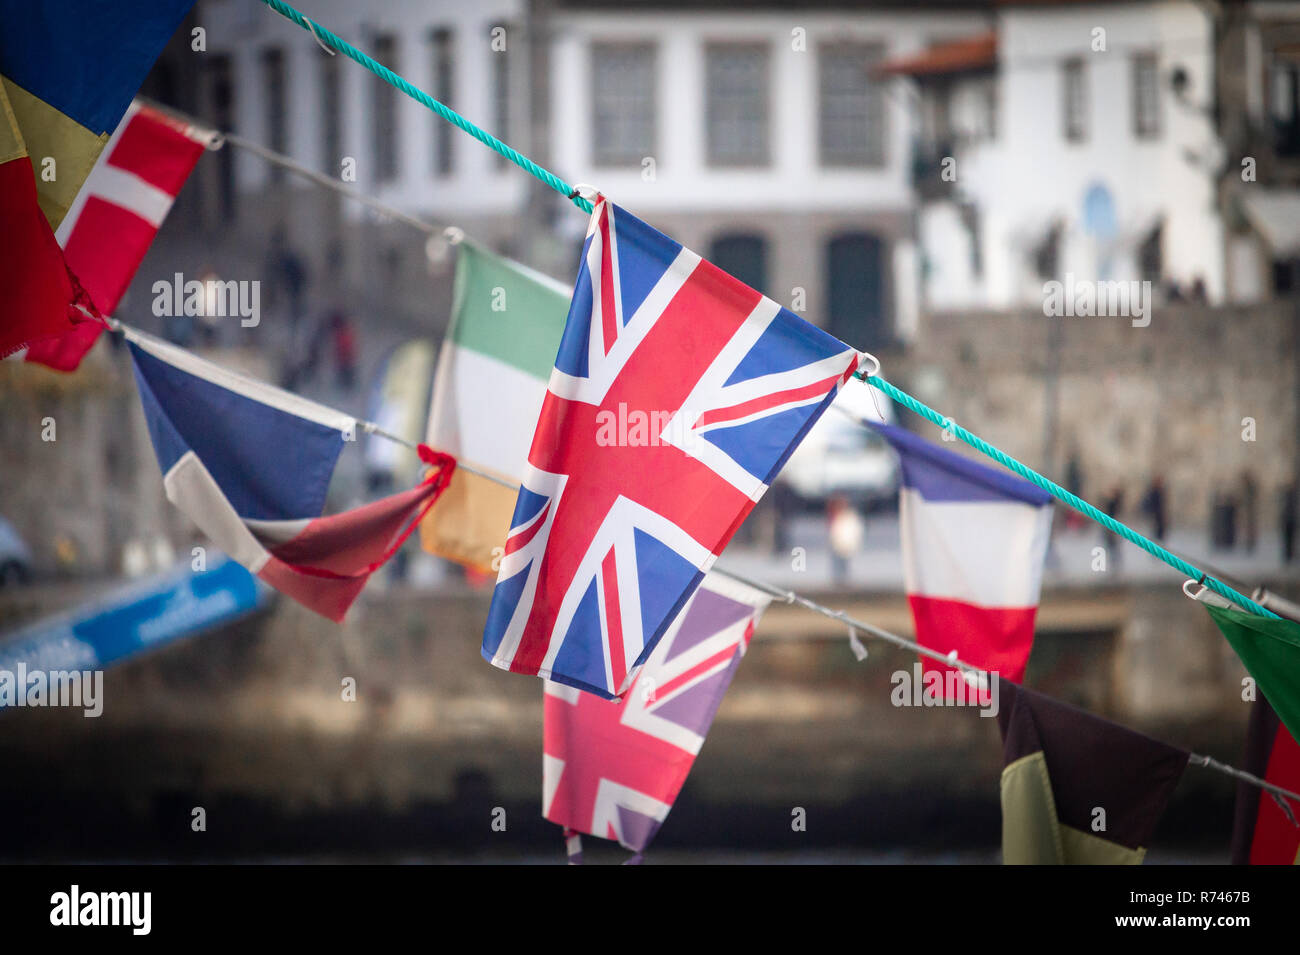 Eine Flagge des Vereinigten Königreichs Wellen inmitten von anderen nationalen Flaggen (Irland, Frankreich, Dänemark), gegen eine alte Stadt Hintergrund. Stockfoto